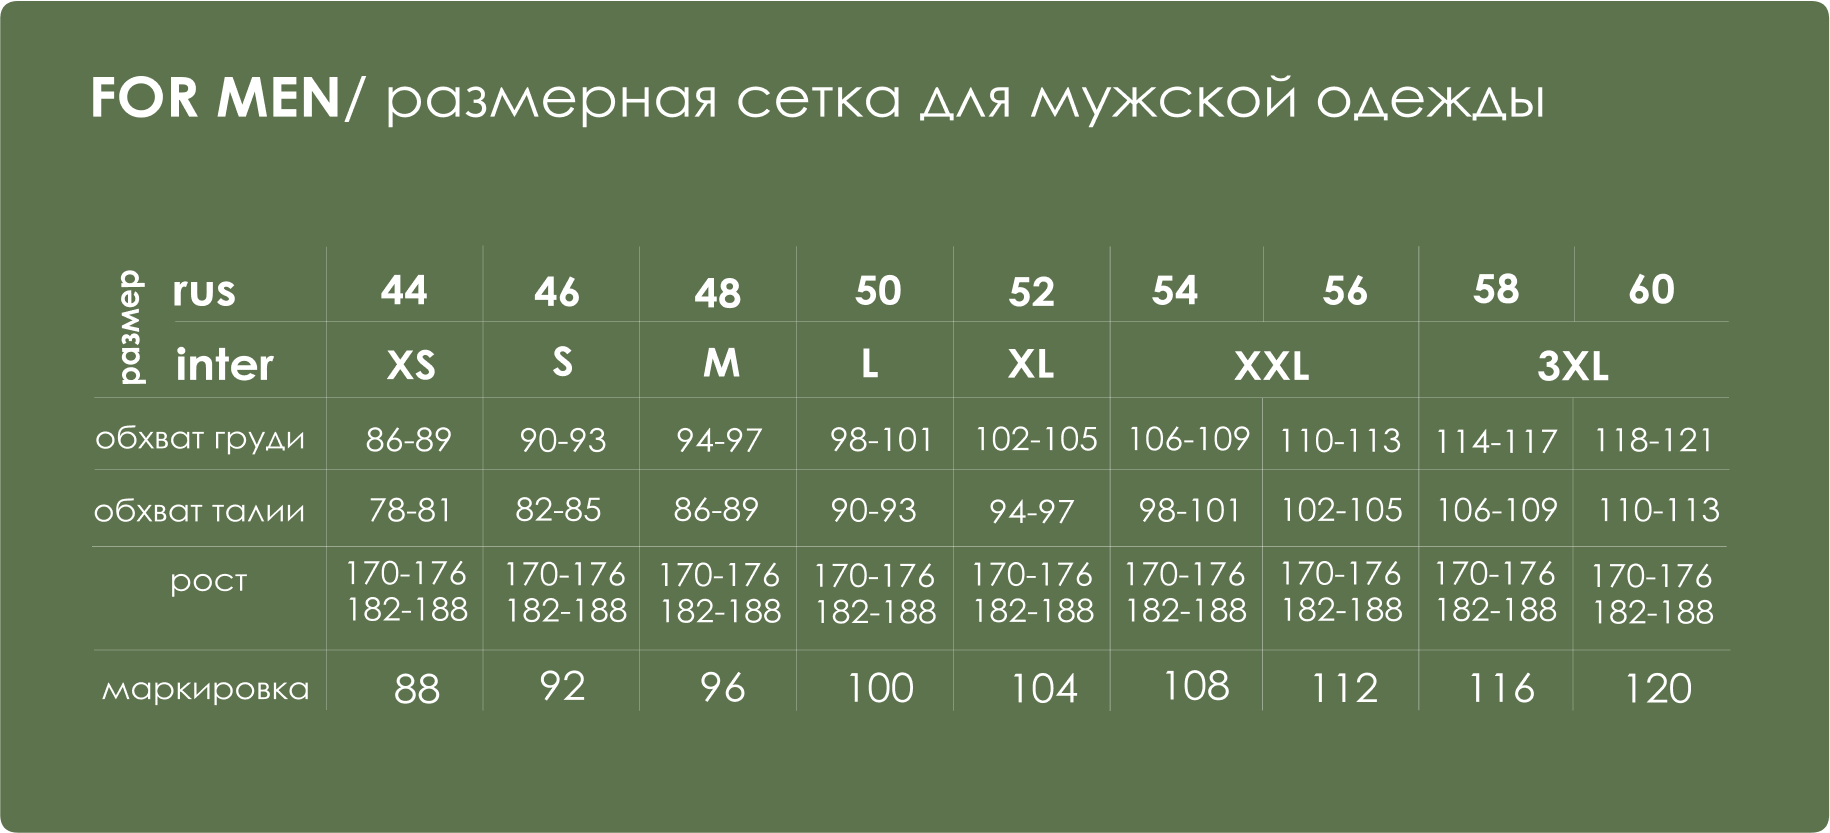 Размеры женской одежды таблица